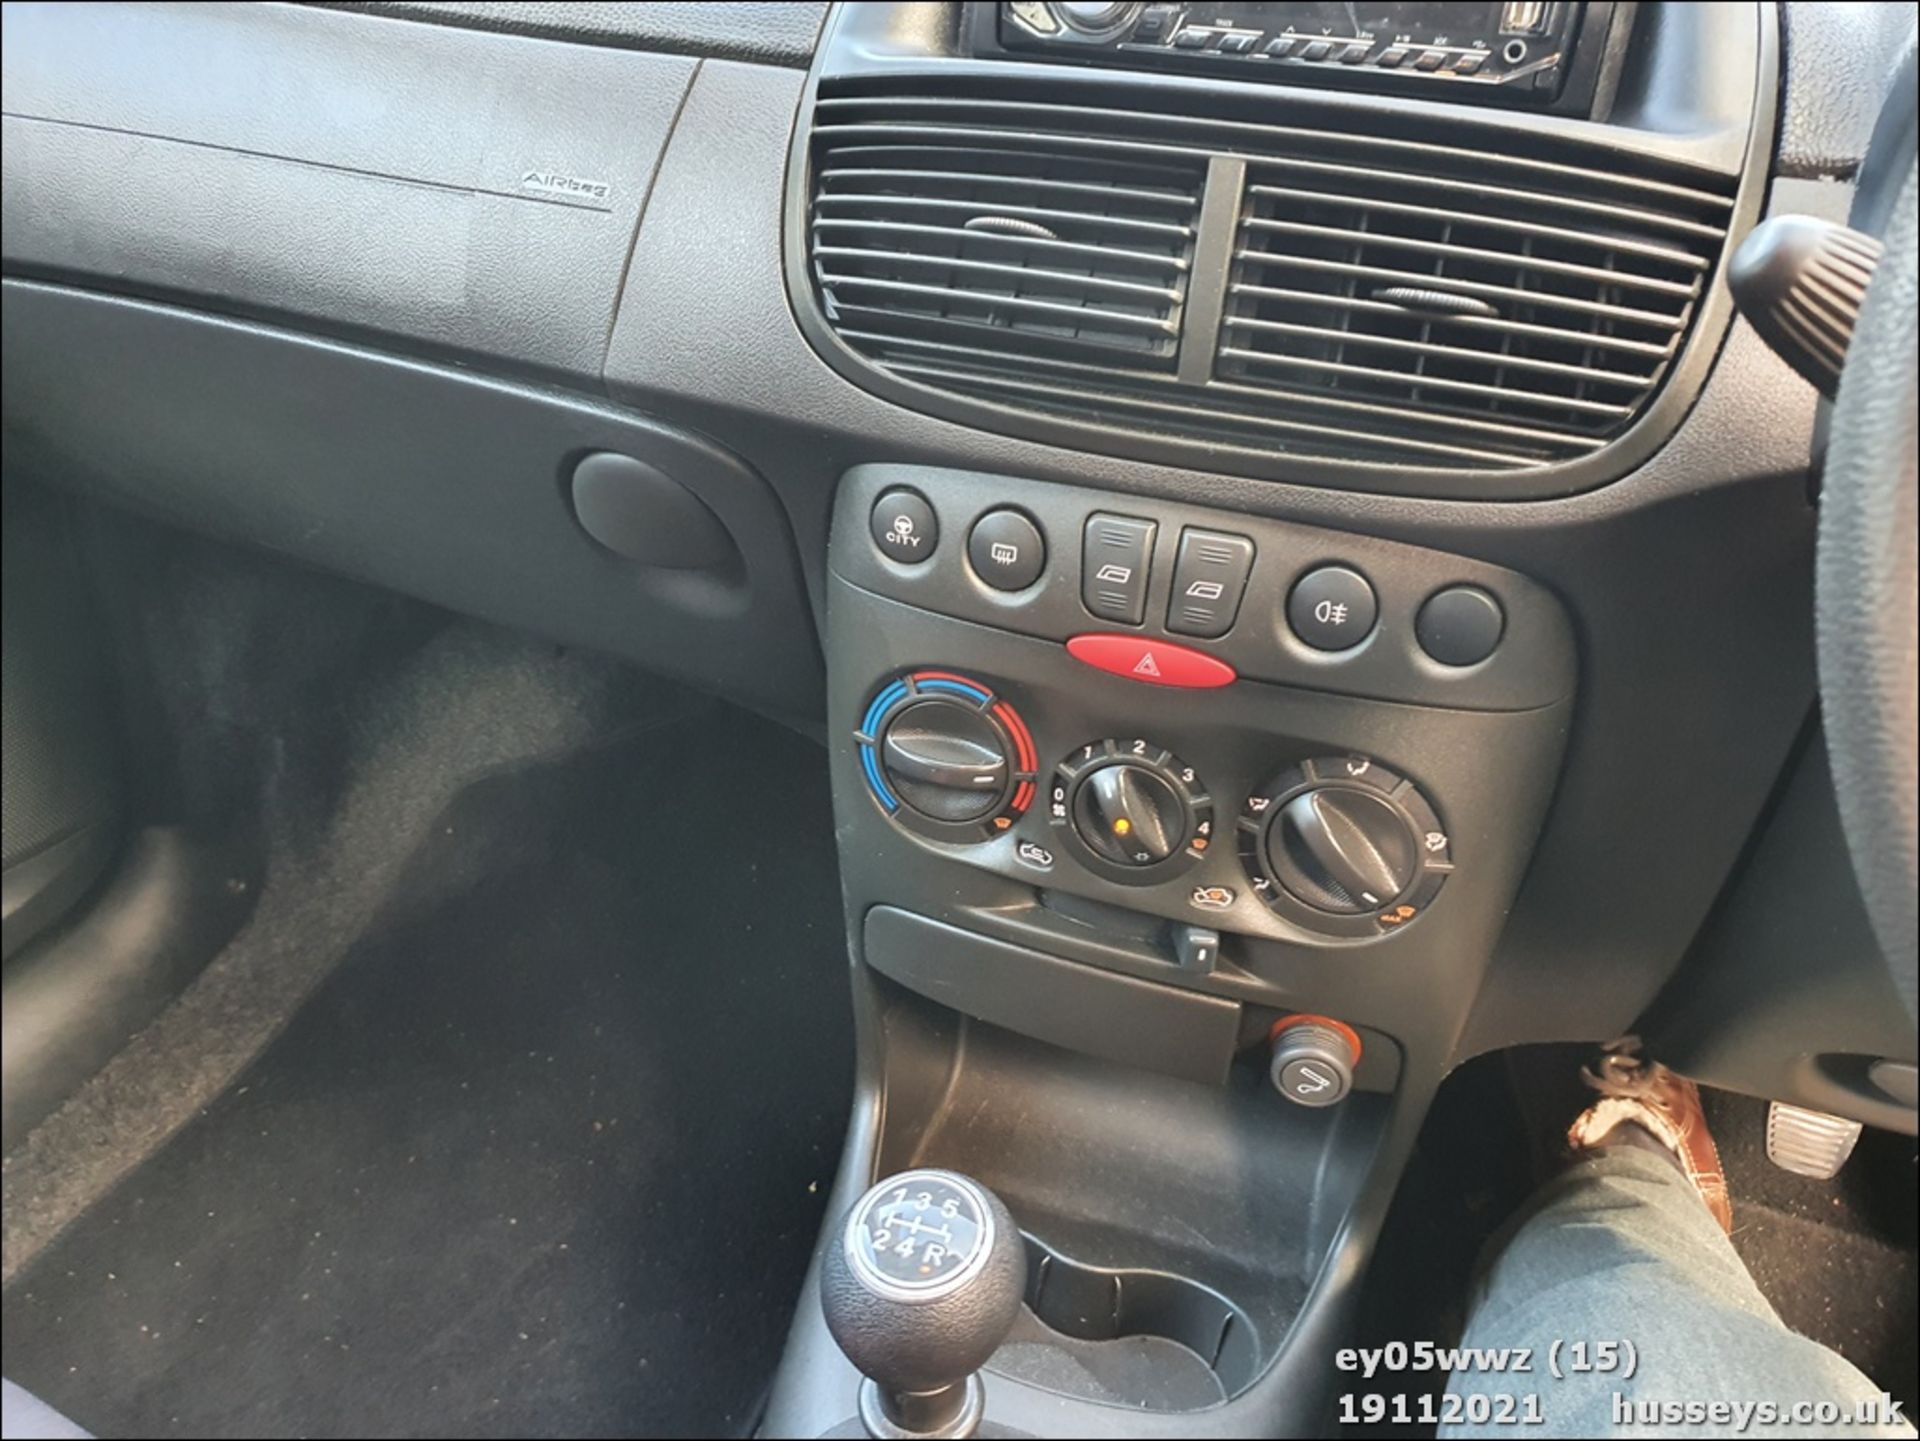 05/05 FIAT PUNTO DYNAMIC 8V - 1242cc 3dr Hatchback (Grey) - Image 15 of 20